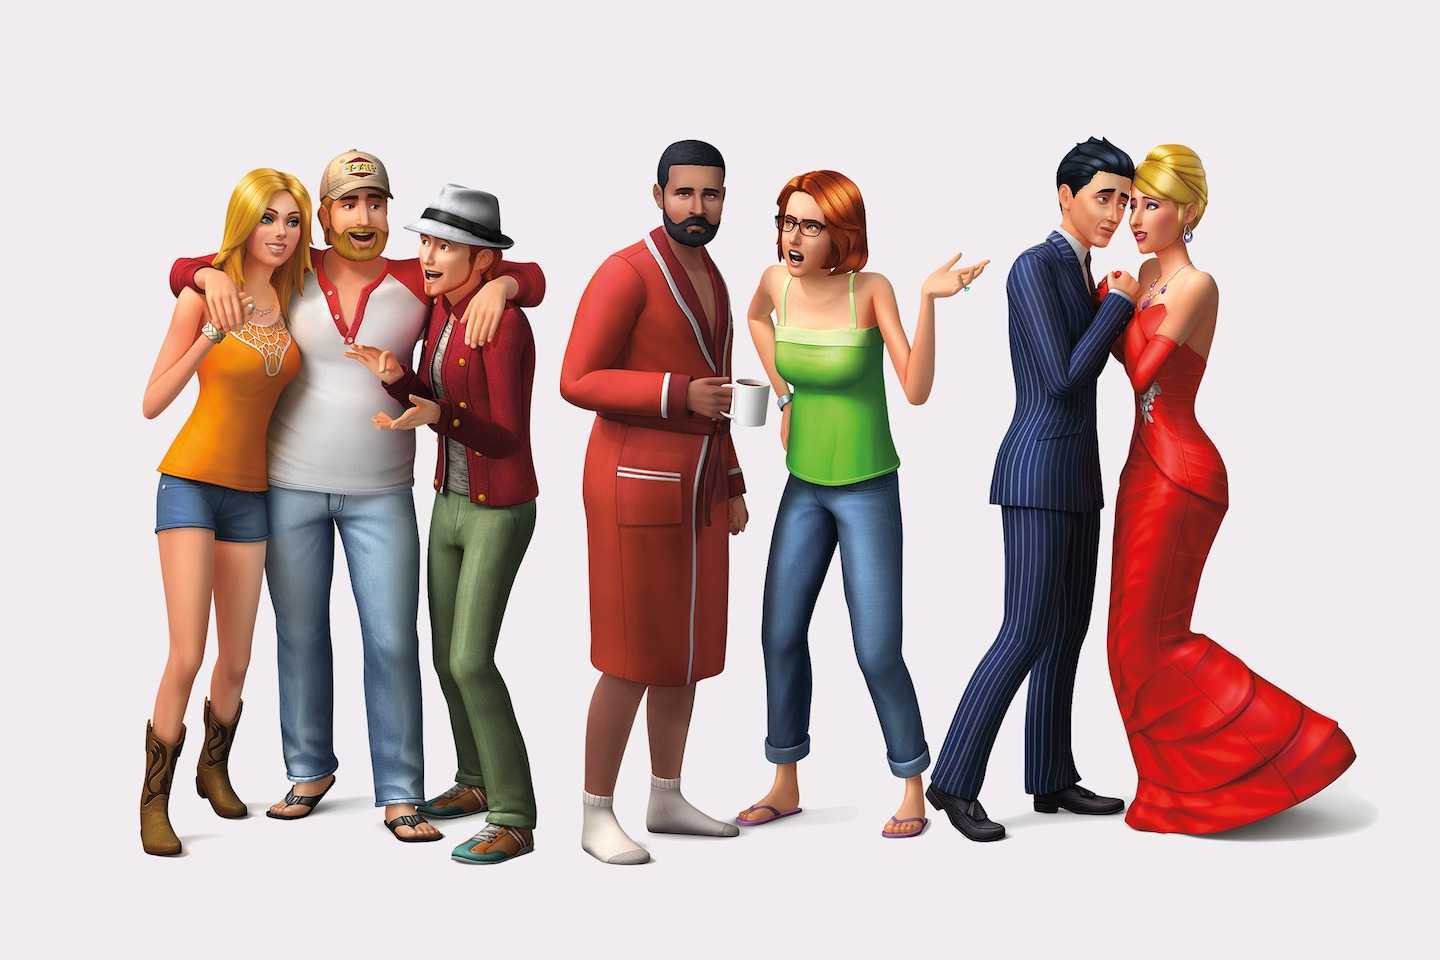 Sims 4 обзор игры, видео обзор на русском